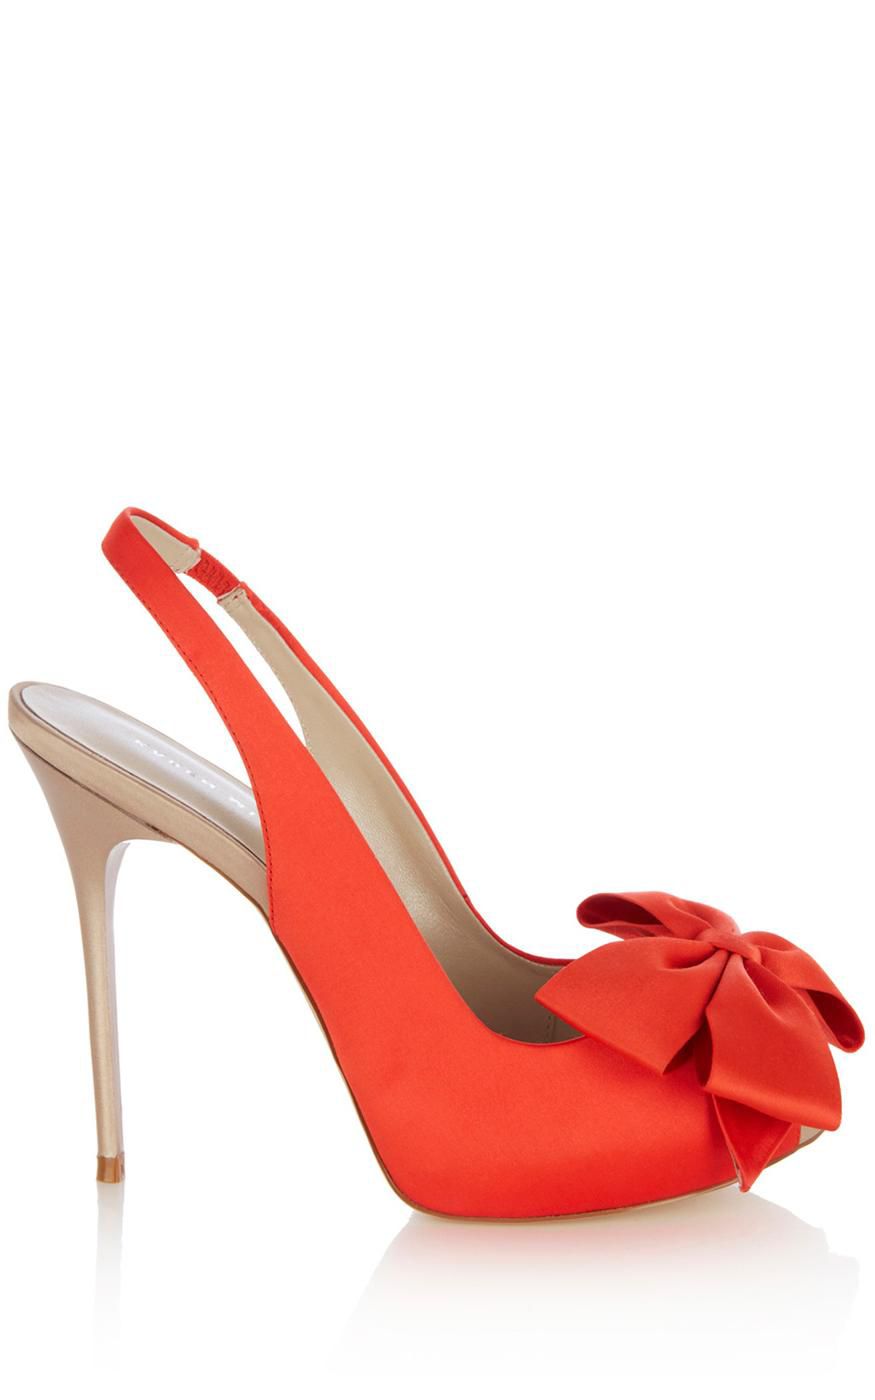 Karen Millen Red Shoes | vlr.eng.br